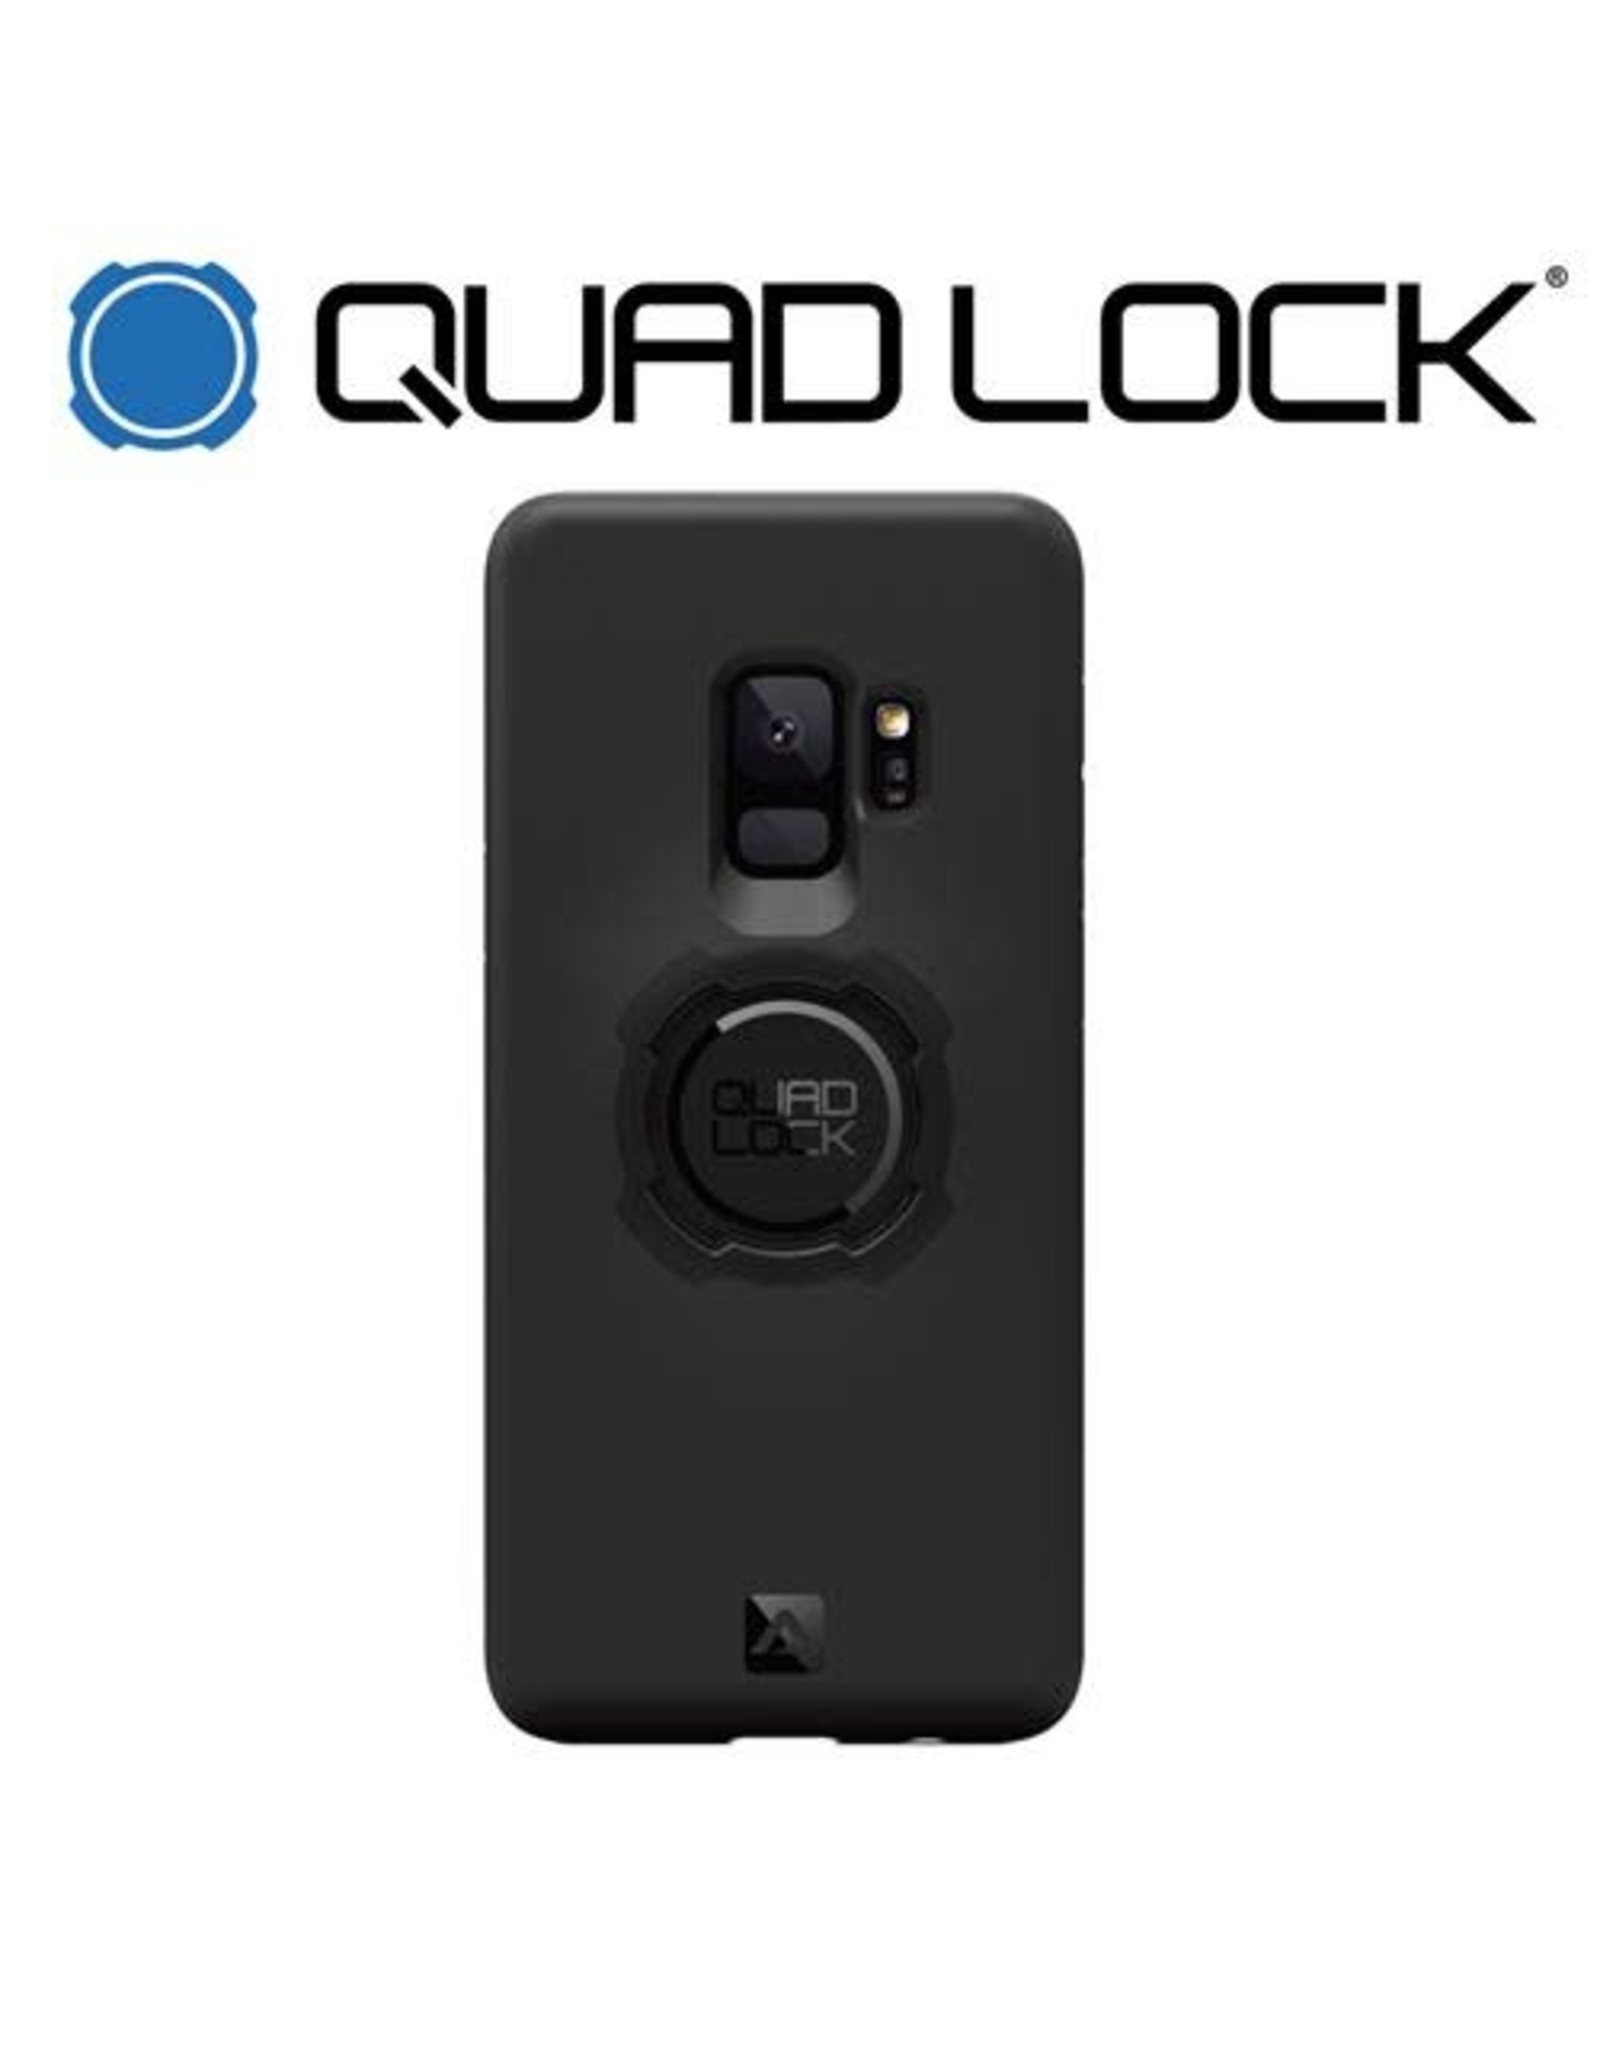 QUAD LOCK QUAD LOCK FOR GALAXY S9 PHONE CASE